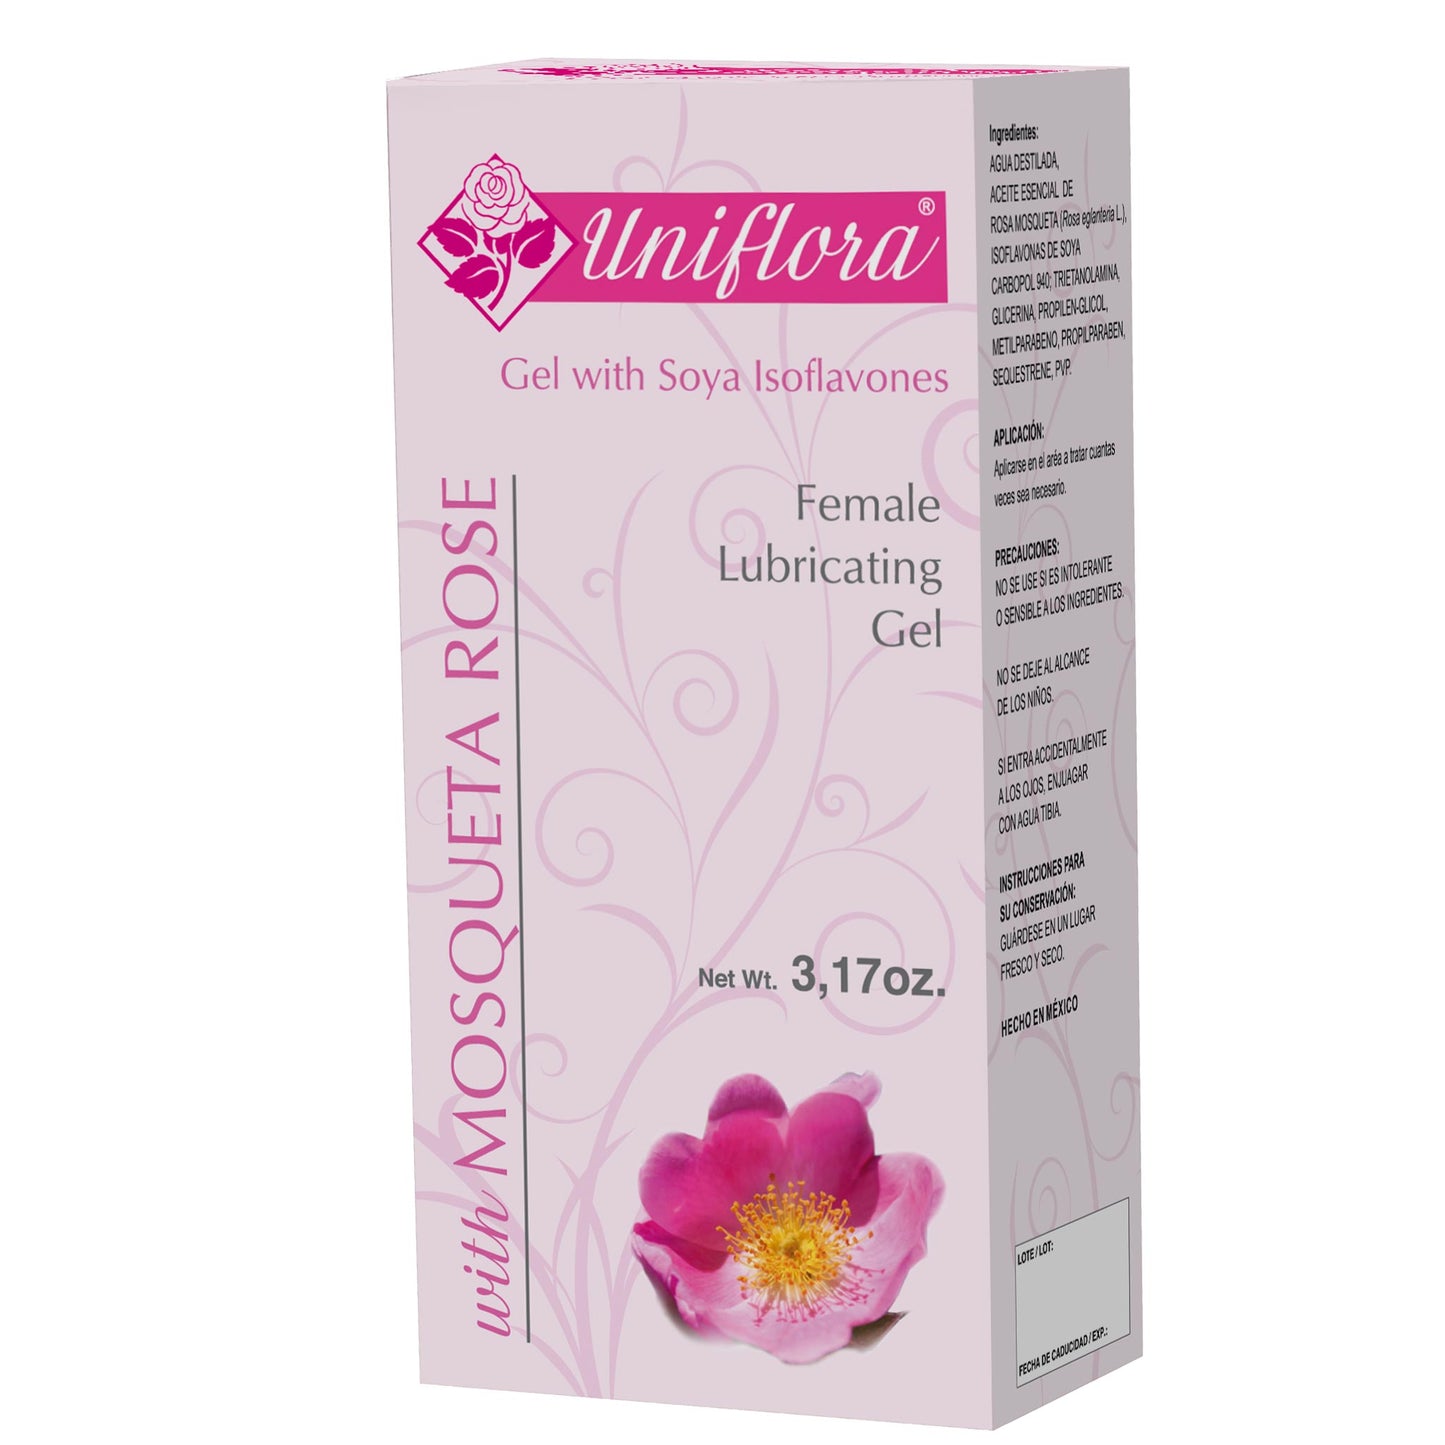 UNIFLORA ® gel lubricante 90g